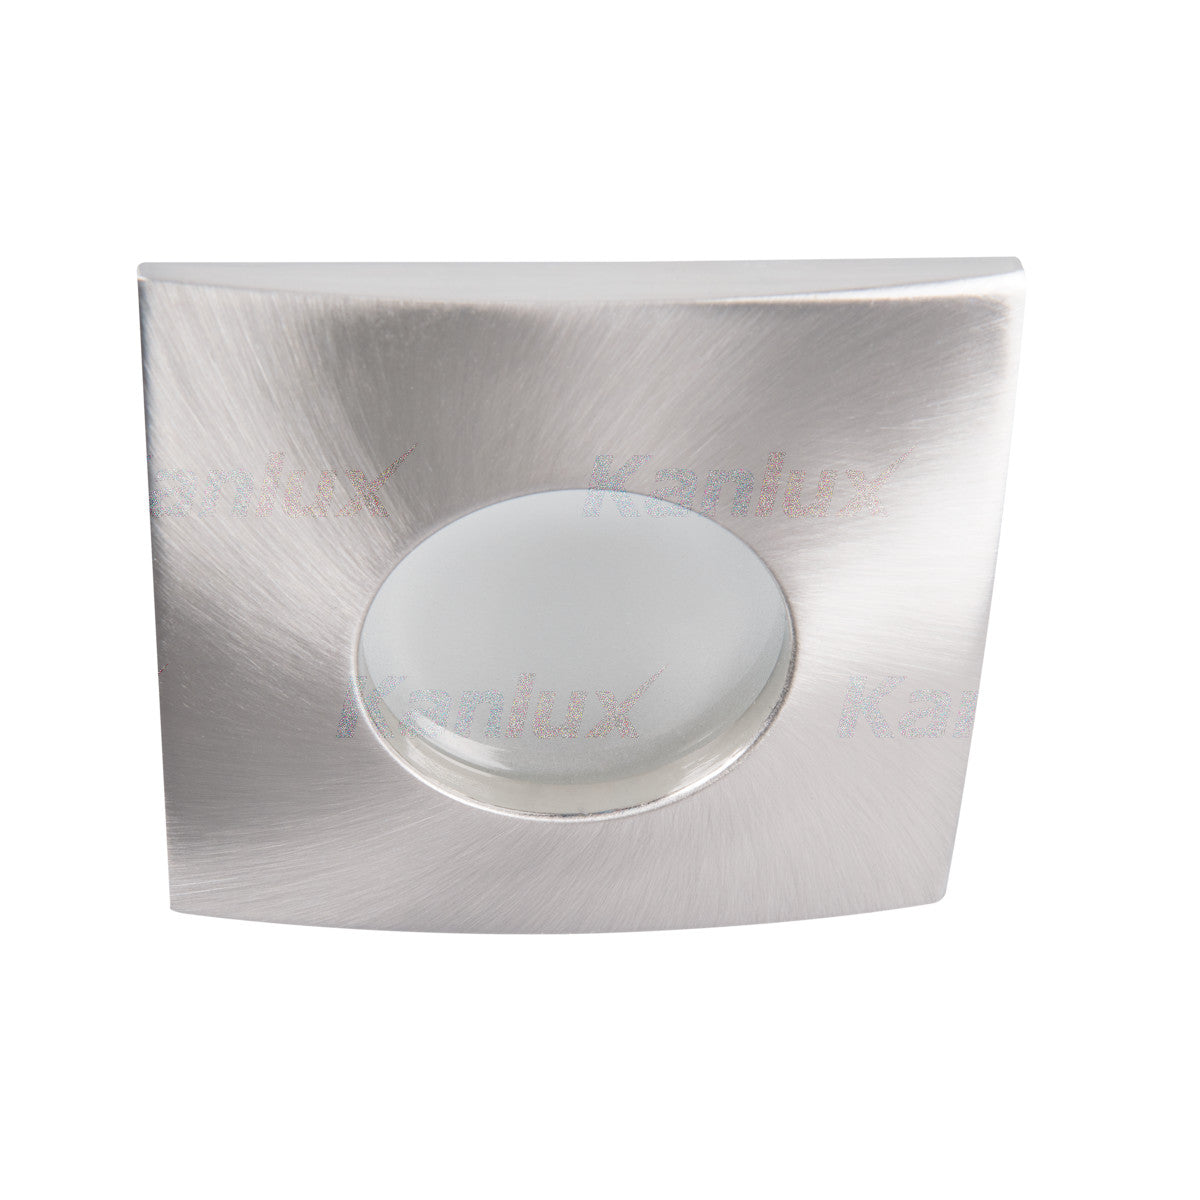 Kanlux QULES GU10 Ceiling Recessed IP44 Bathroom Kitchen Spotlight Downlight Spot Light